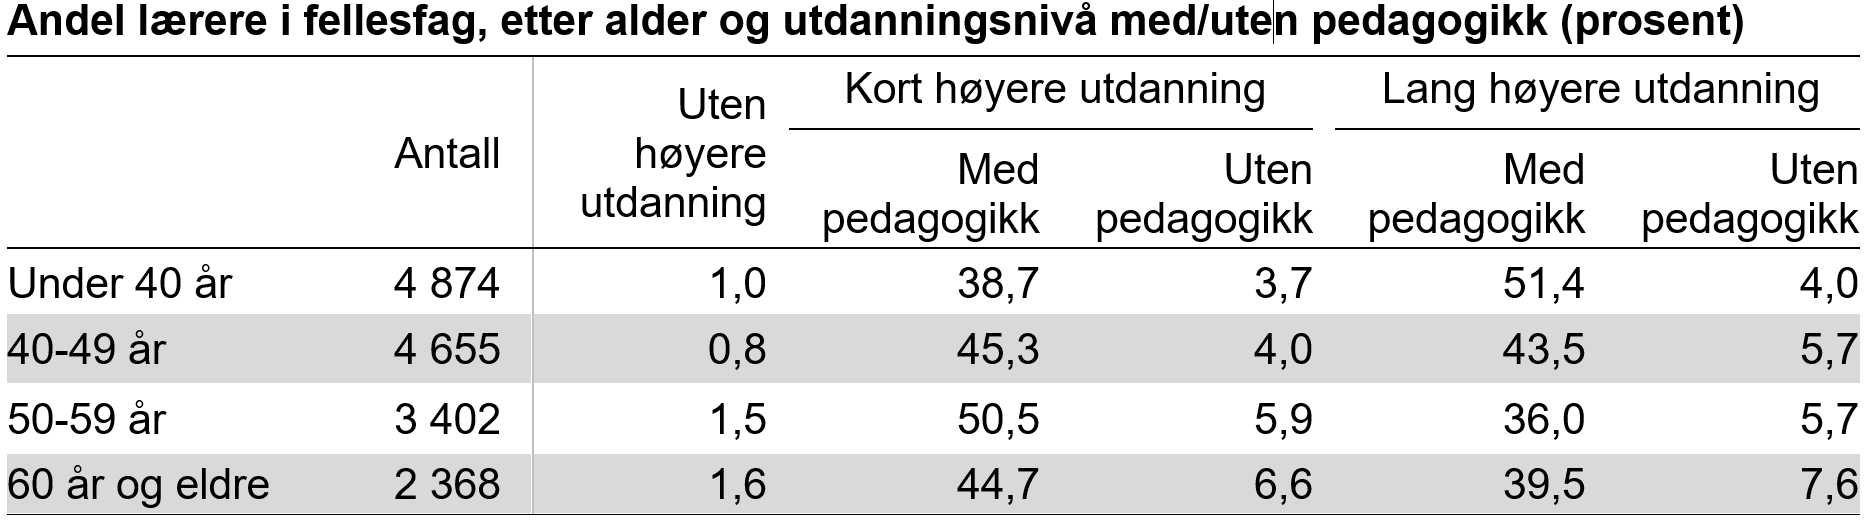 Andel lærere i fellesfag, etter alder og utdanningsnivå med/uten pedagogikk (prosent)